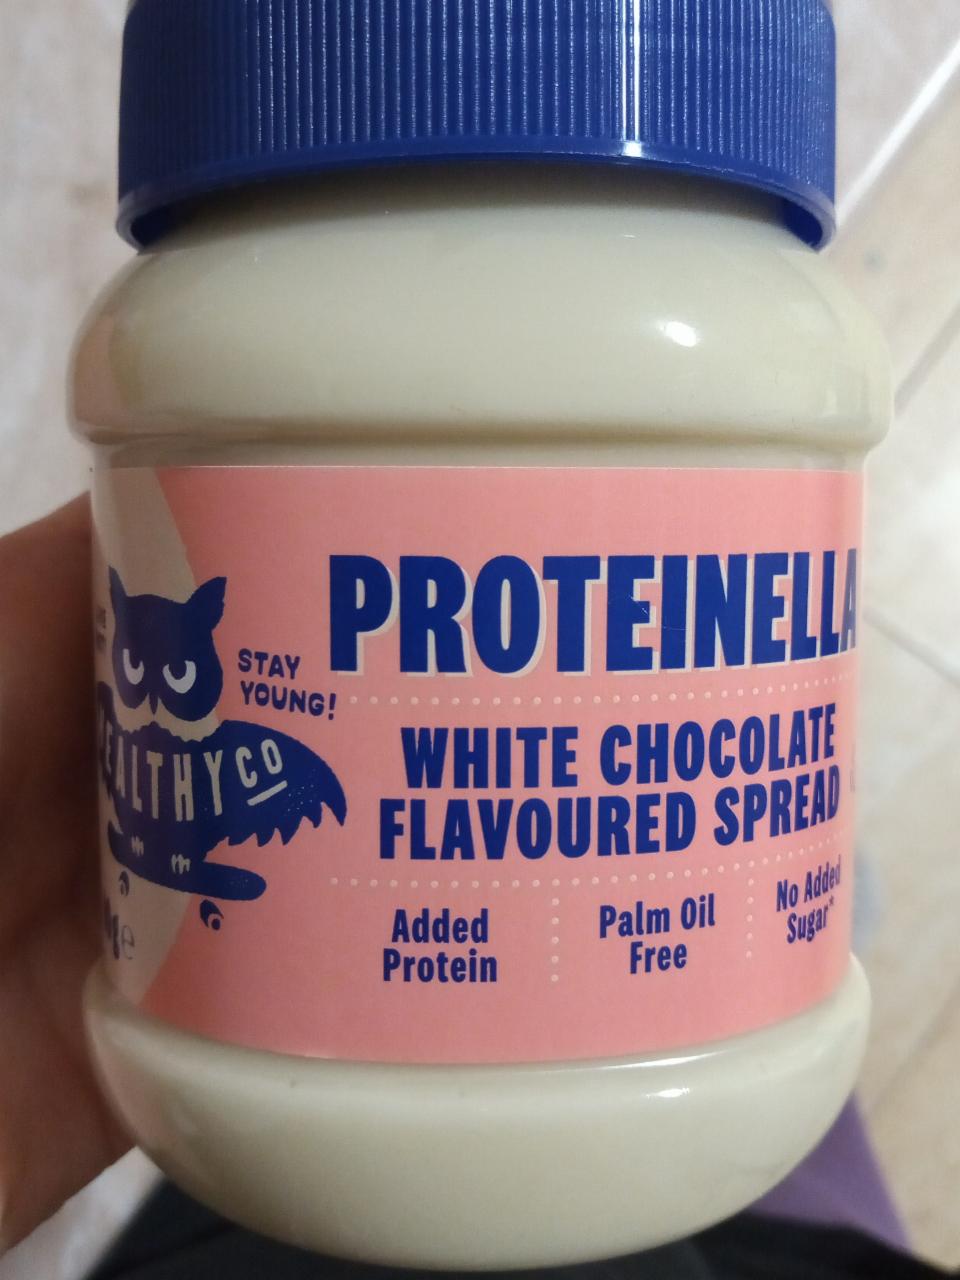 Fotografie - proteinella white chocolate flavoured spread